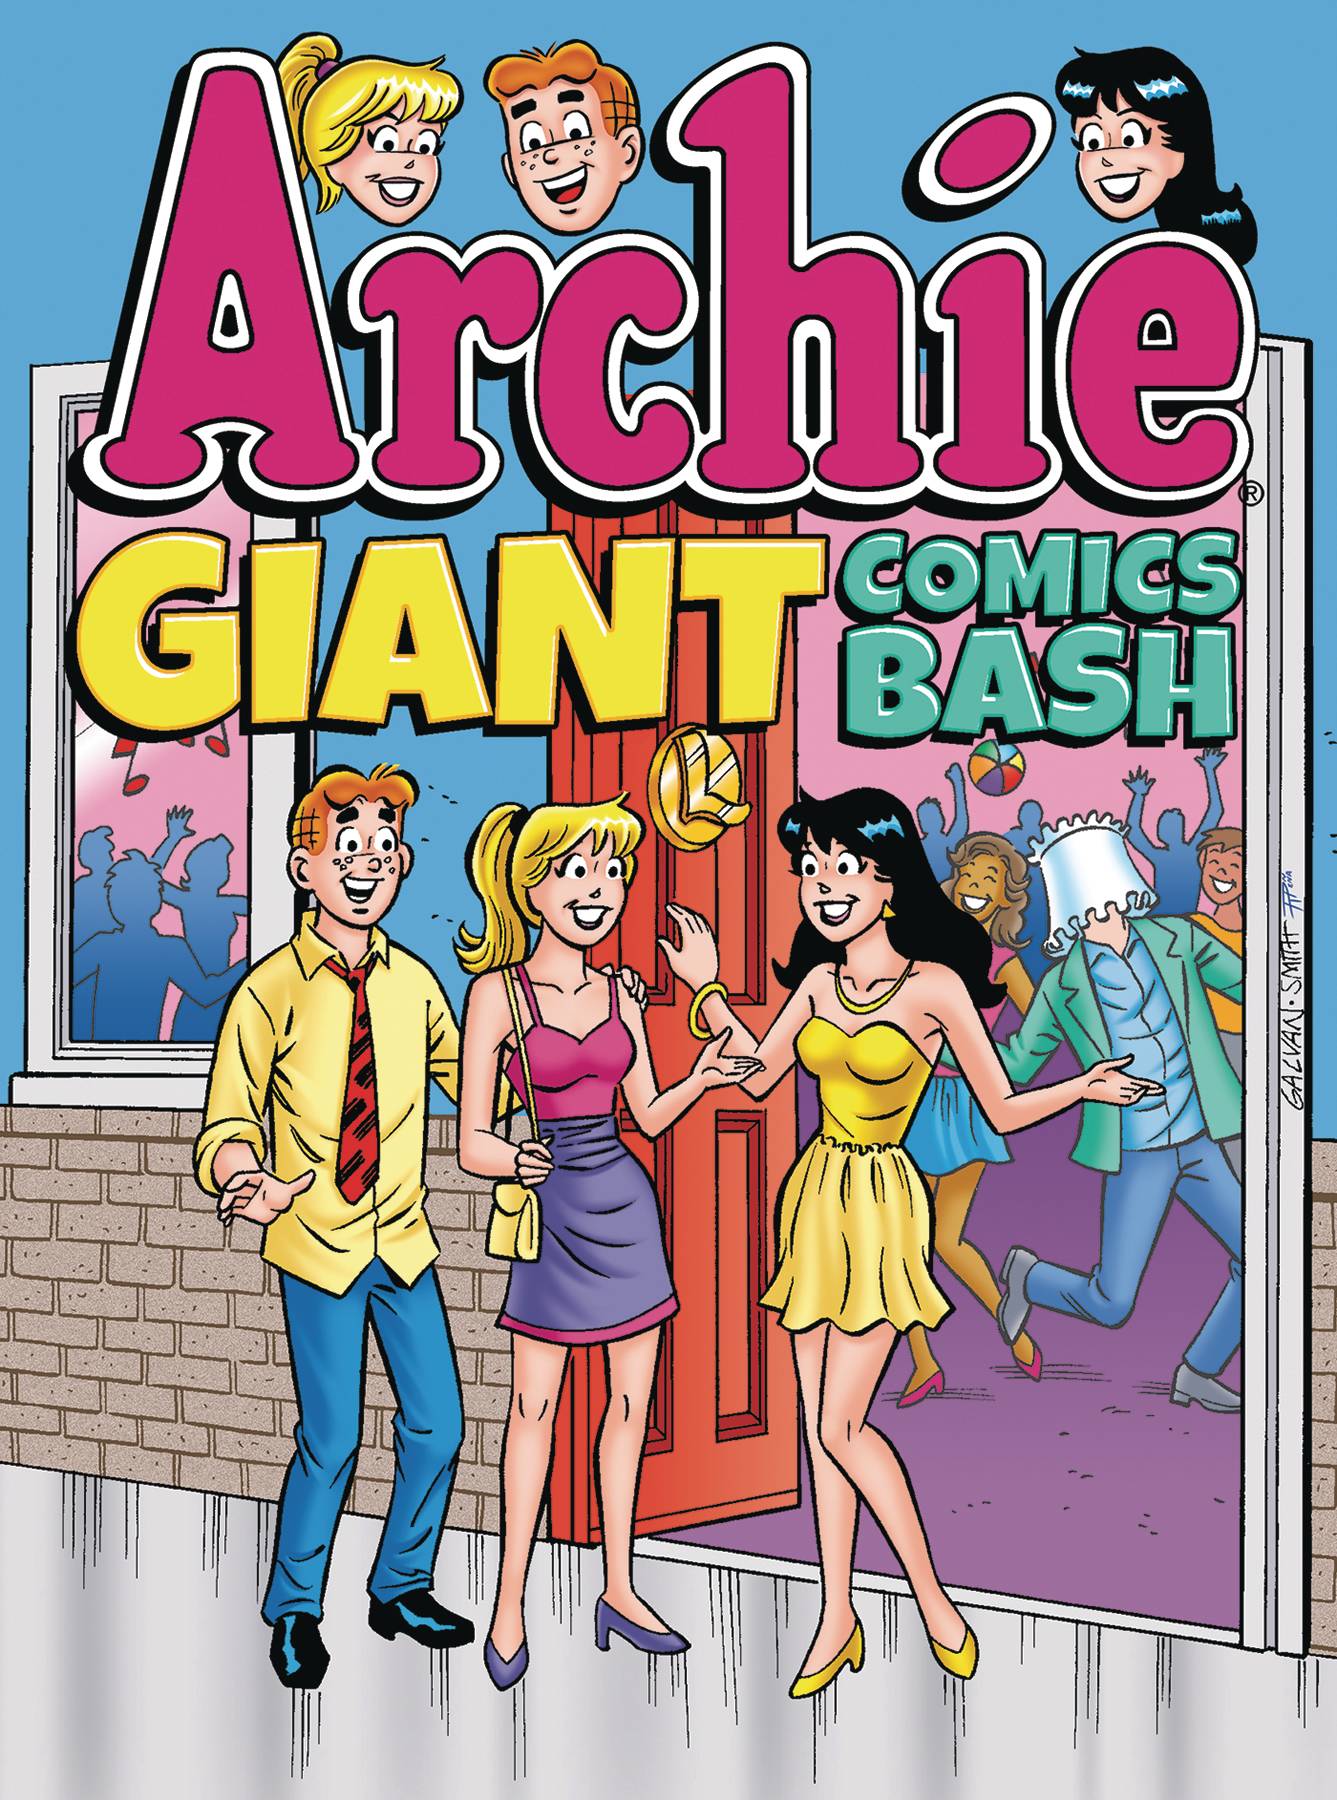 Archie Giant Comics Bash Graphic Novel